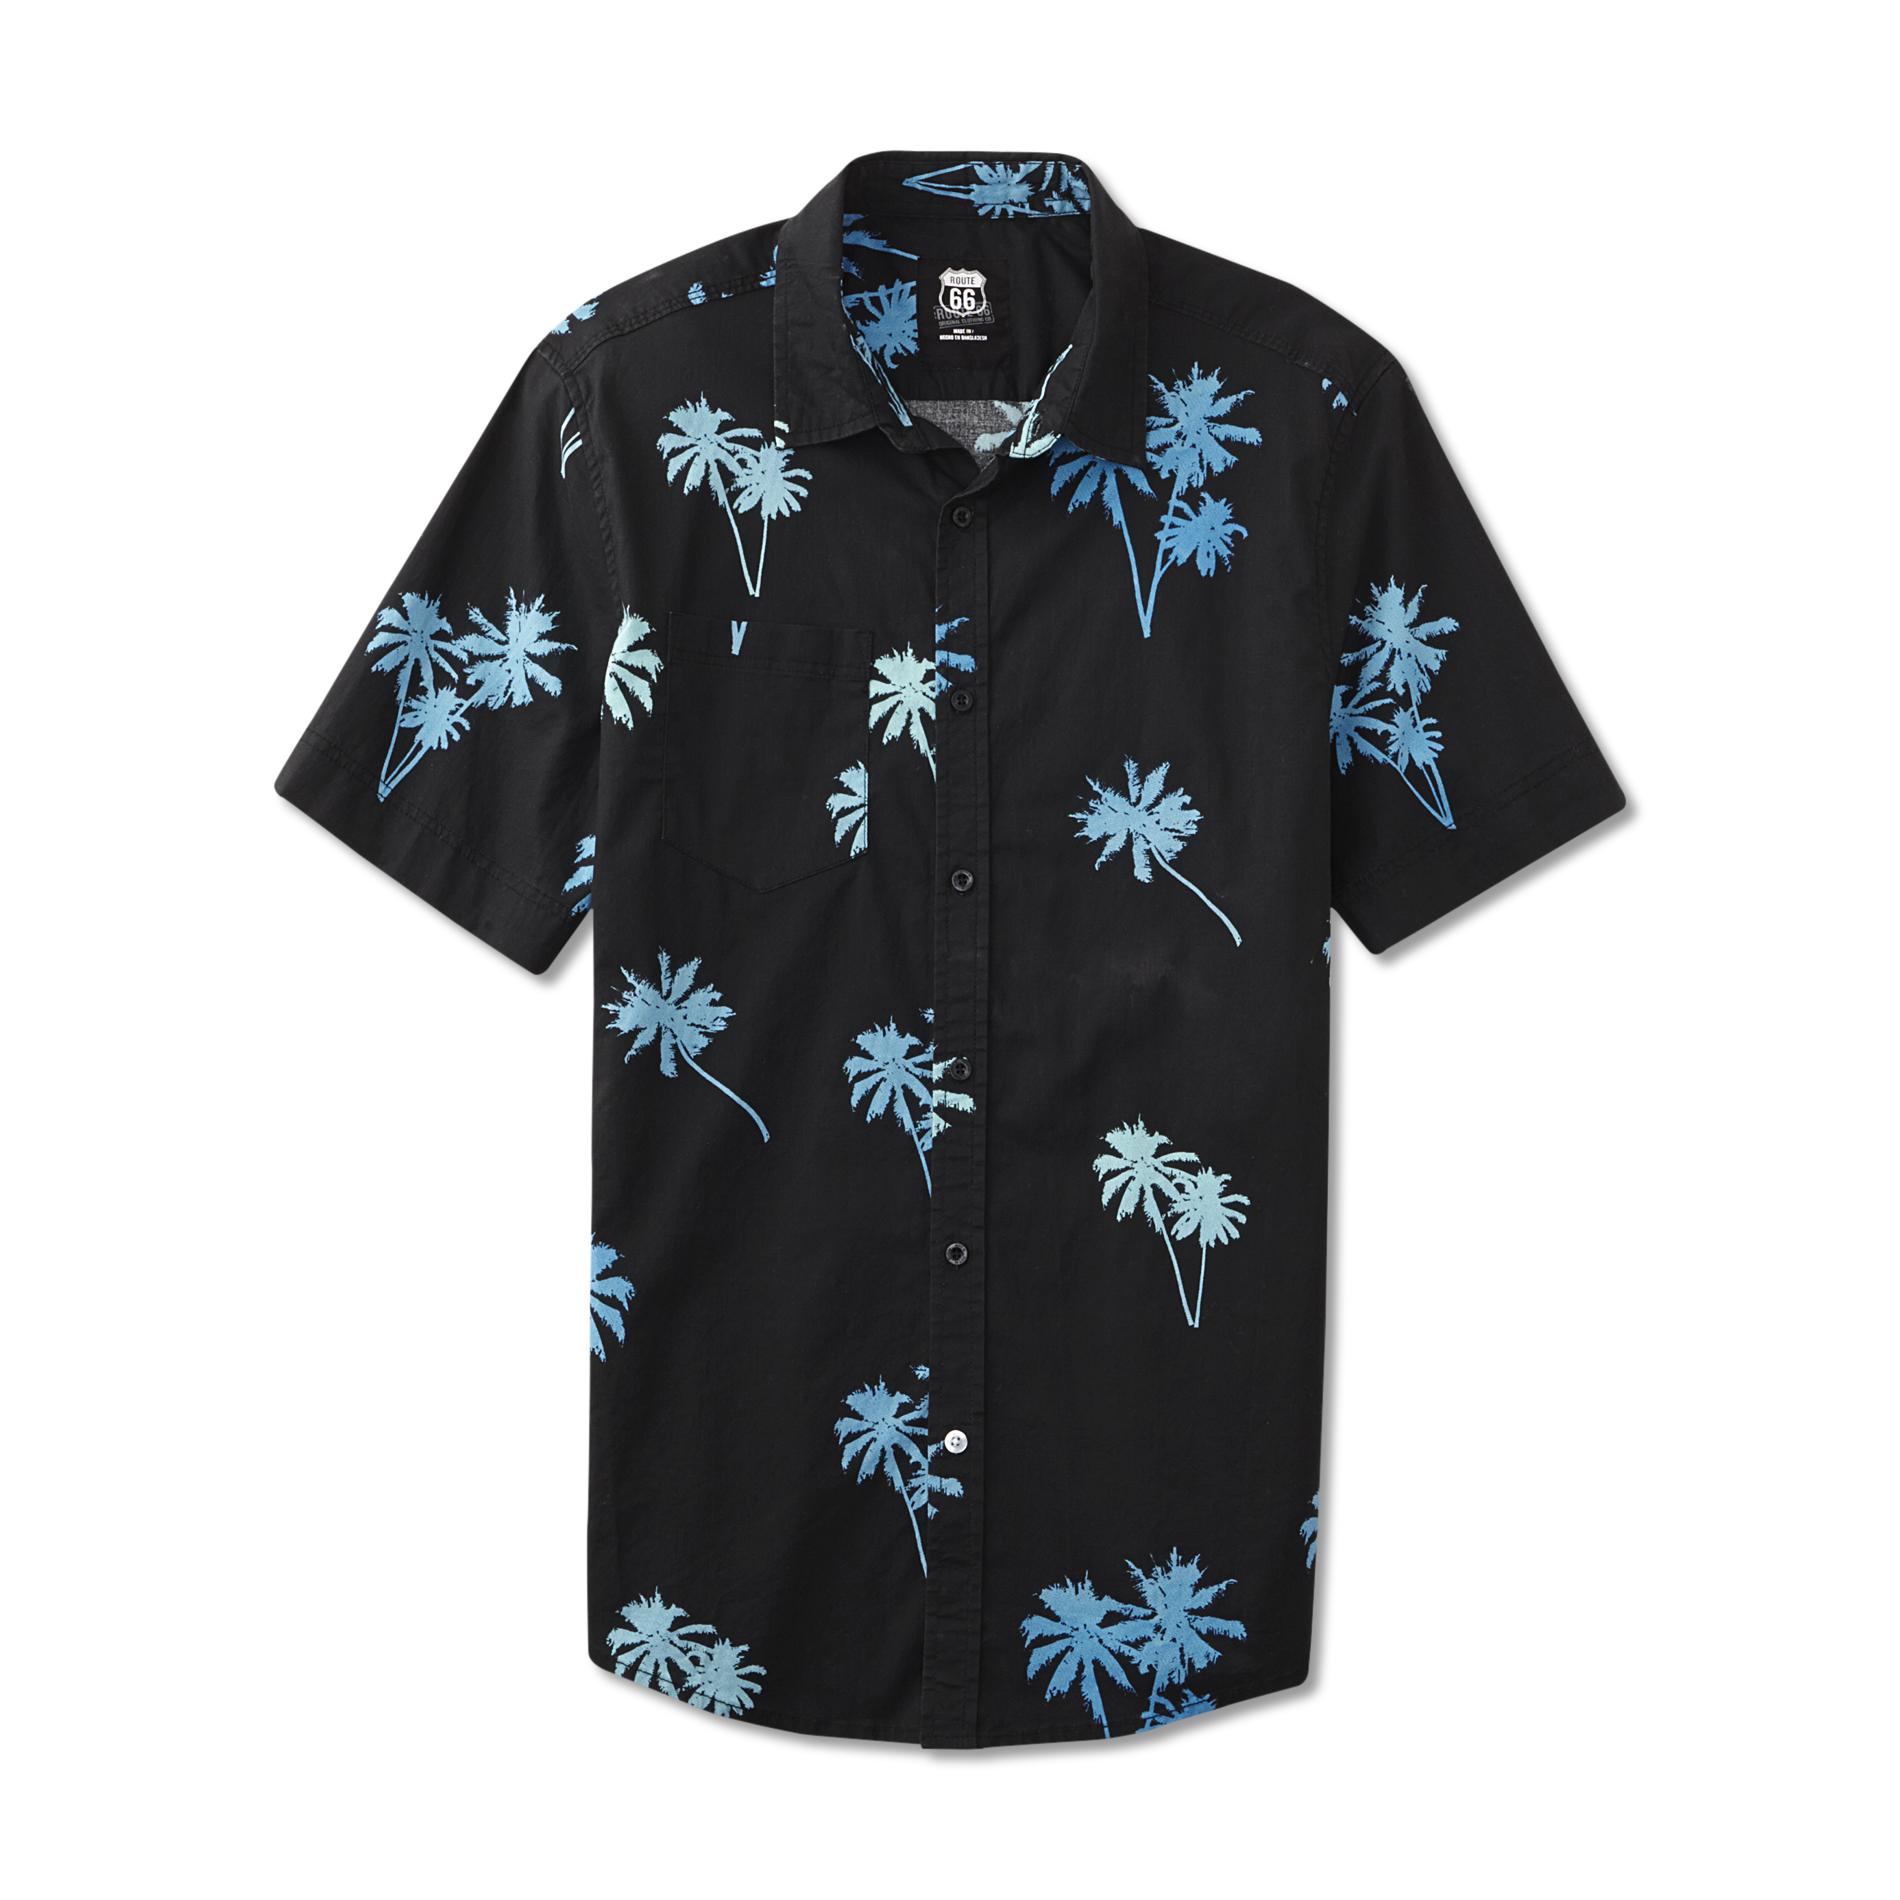 Route 66 Men's Button-Front Shirt - Palm Trees